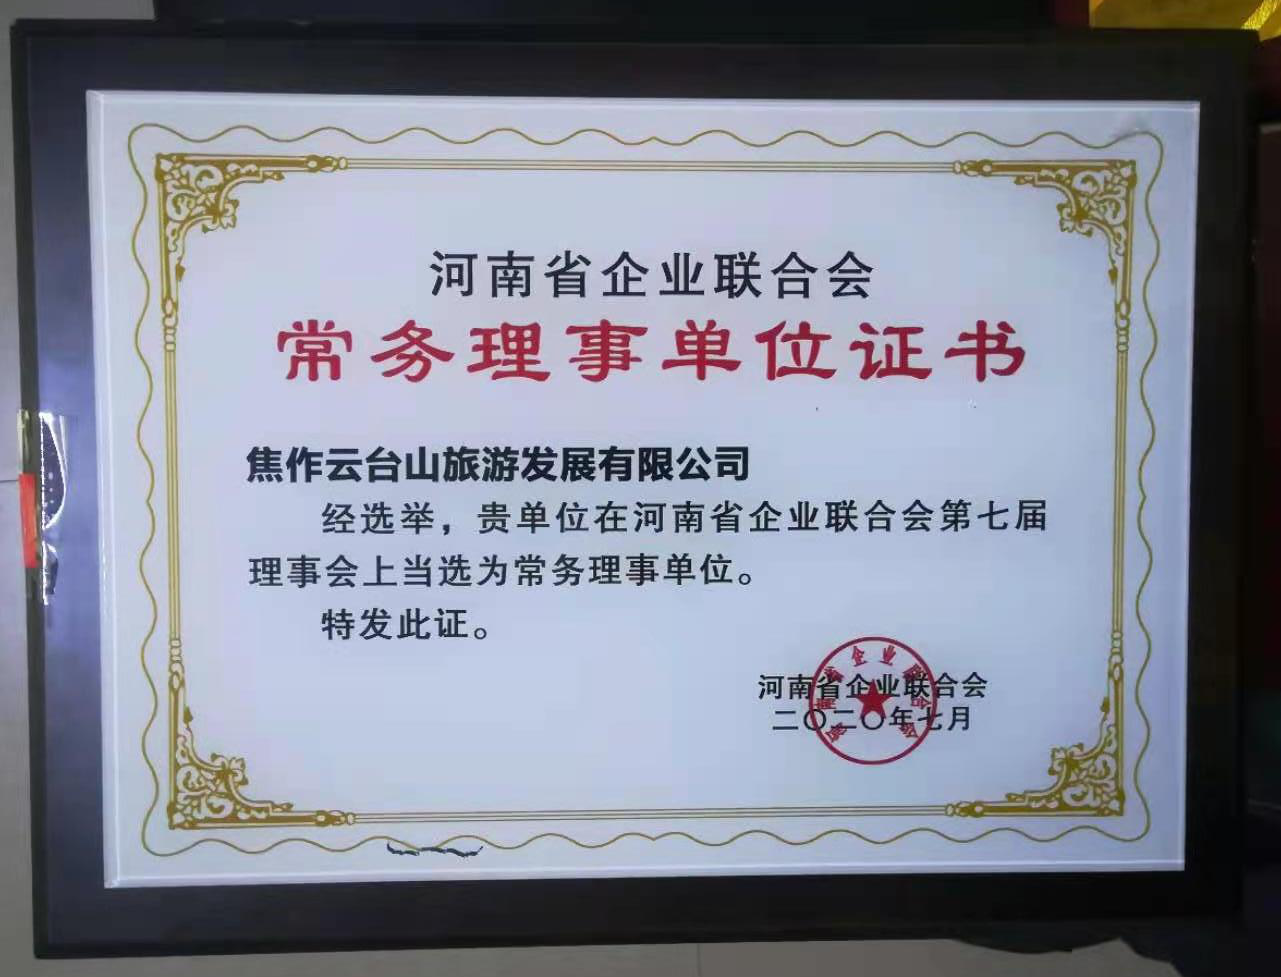 河南省企业联合会授予焦作云台山旅游发展有限公司“河南省企业联合会常务理事单位”证书。